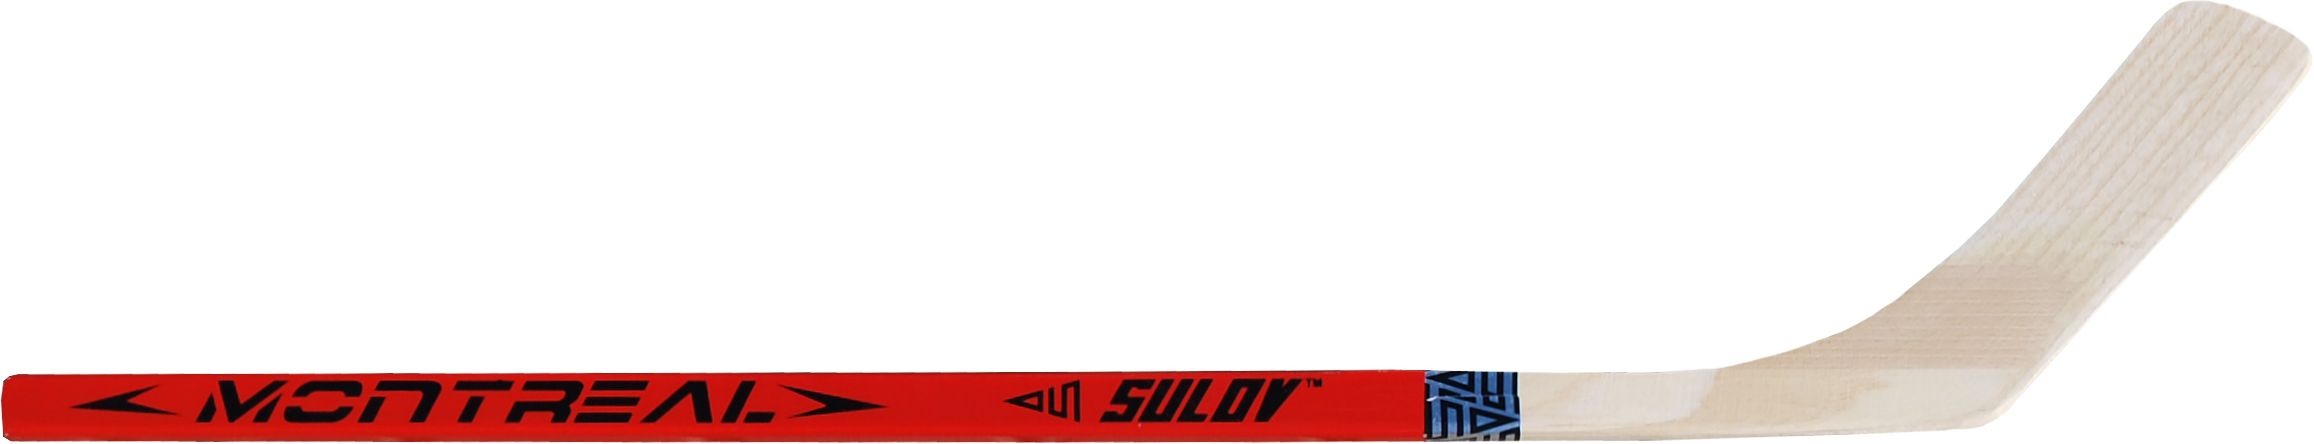 Hokejka SULOV MONTREAL, 80cm, rovná